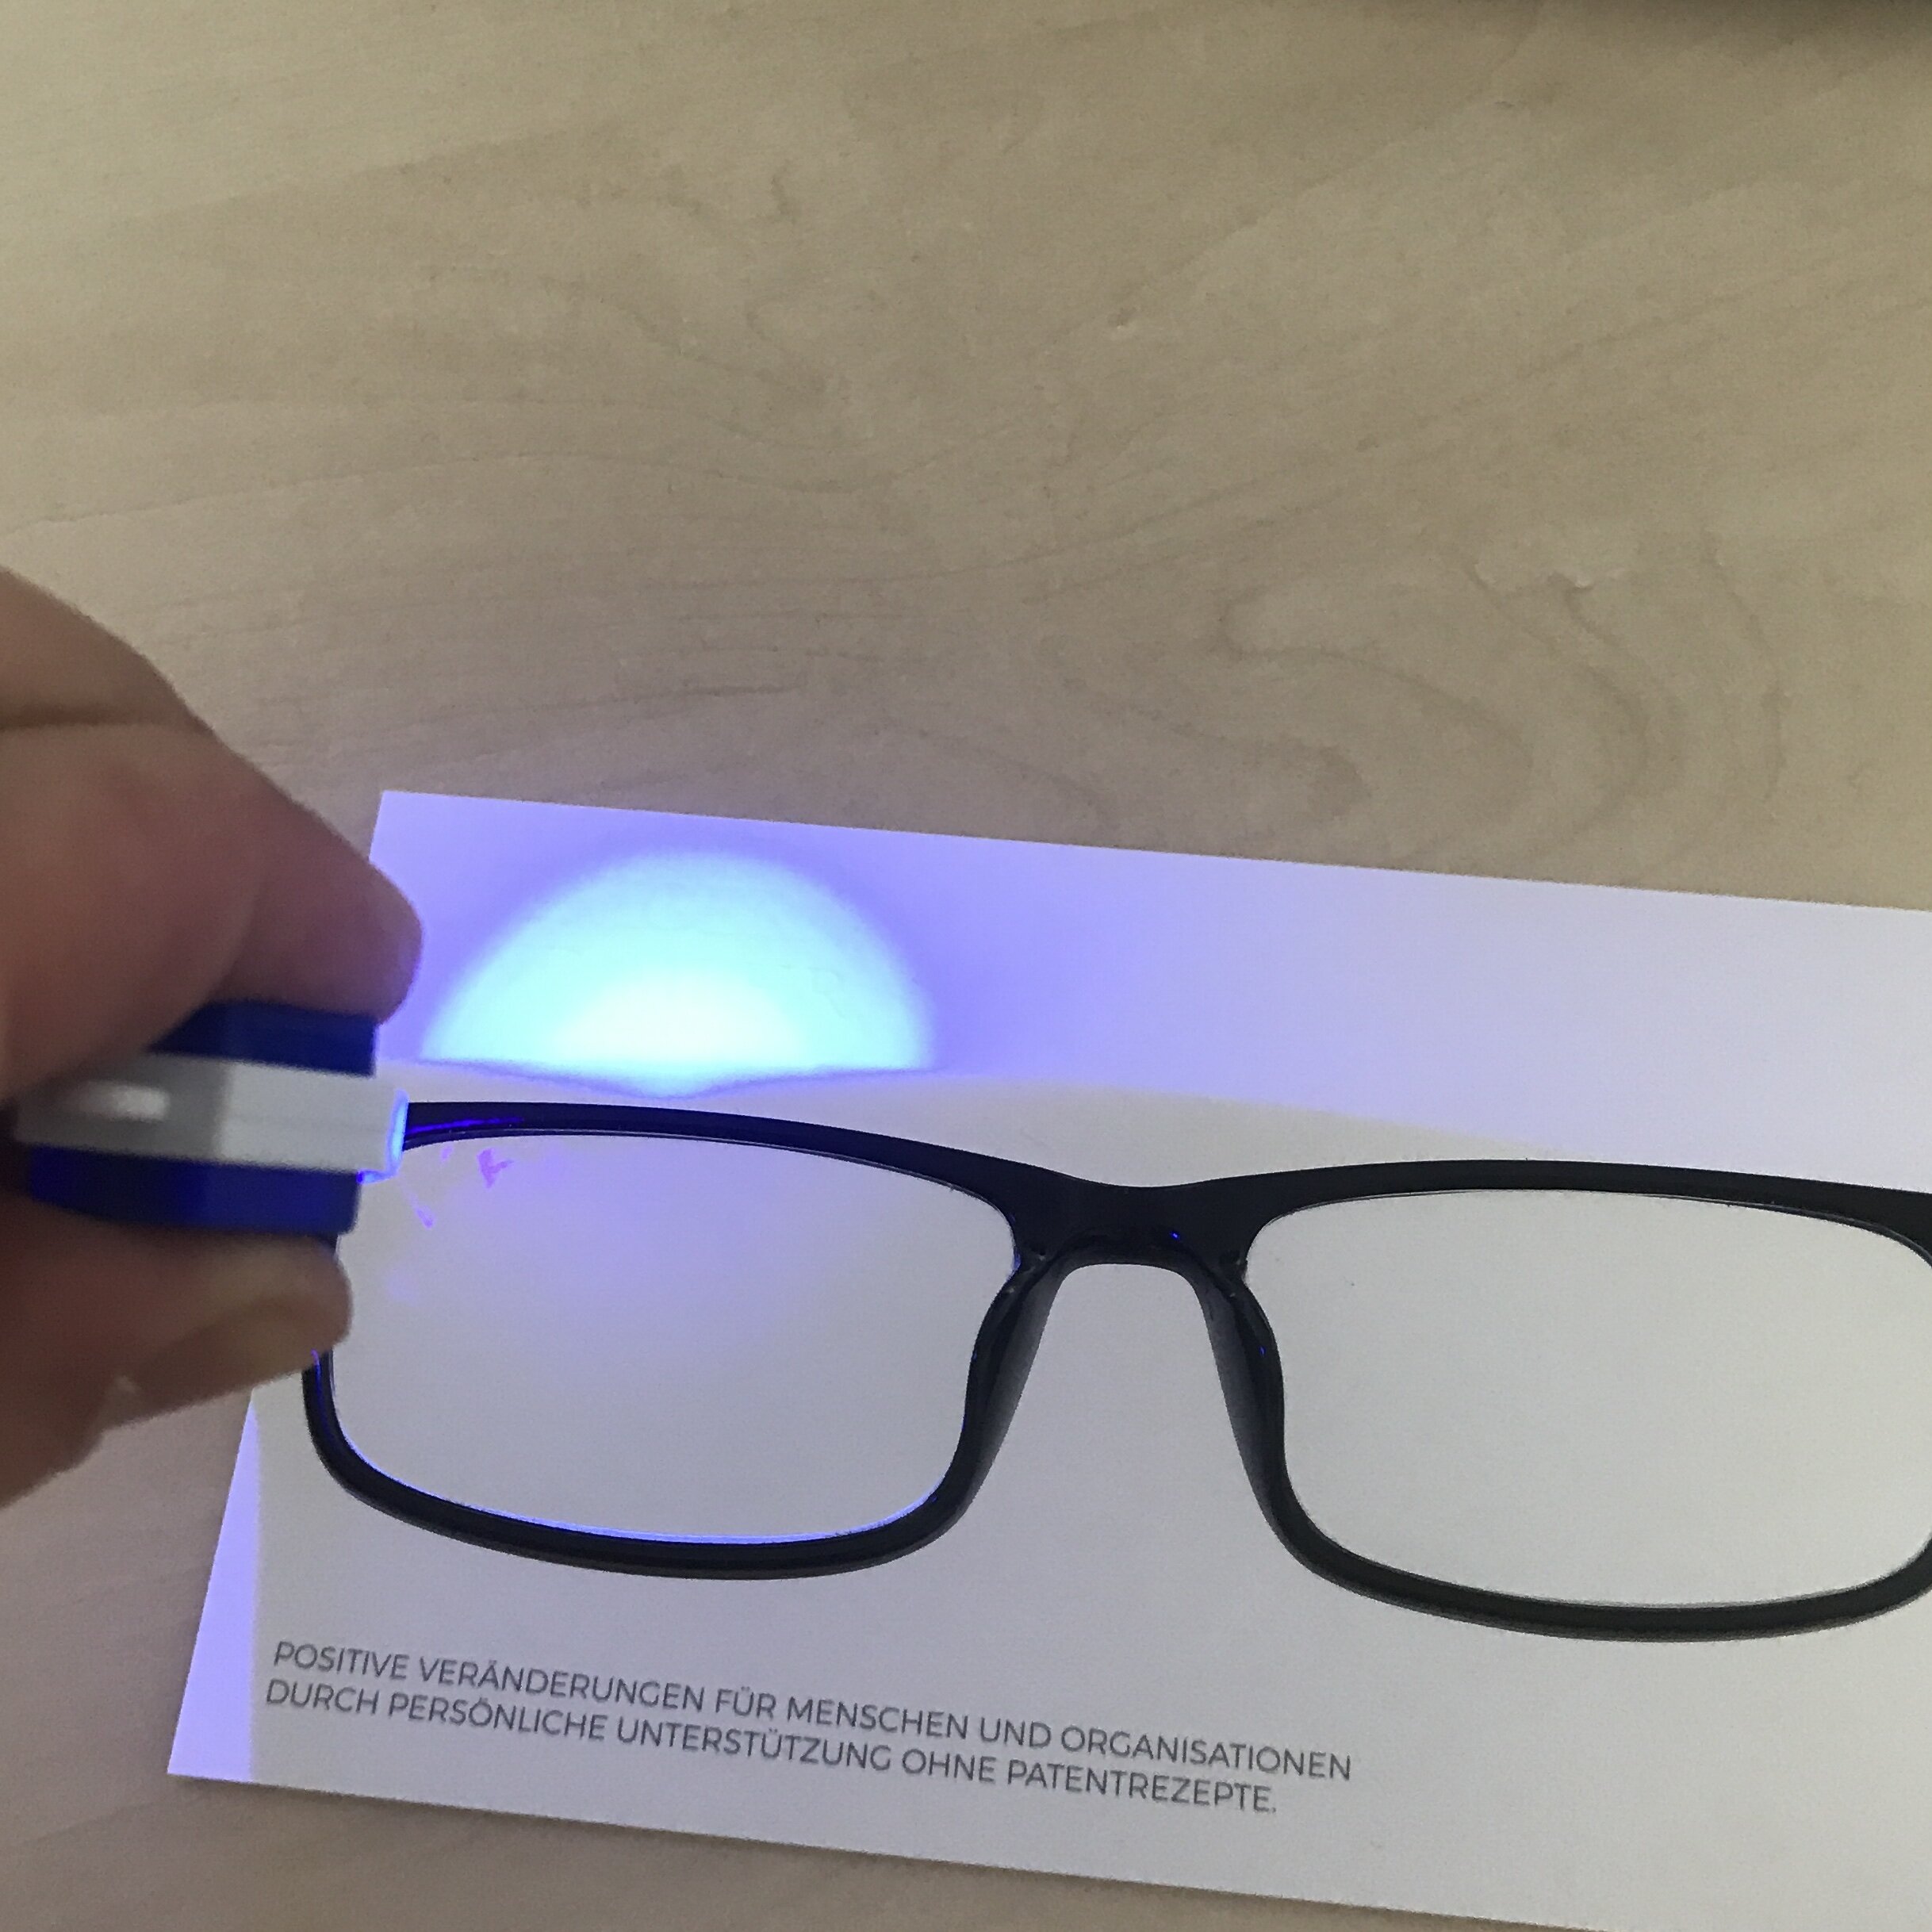 infactory Blaufilter Brille: Augenschonende Bildschirm-Brille mit Blaulicht- Filter, 0 Dioptrien (Bildschirm Brille Blaulichtfilter)